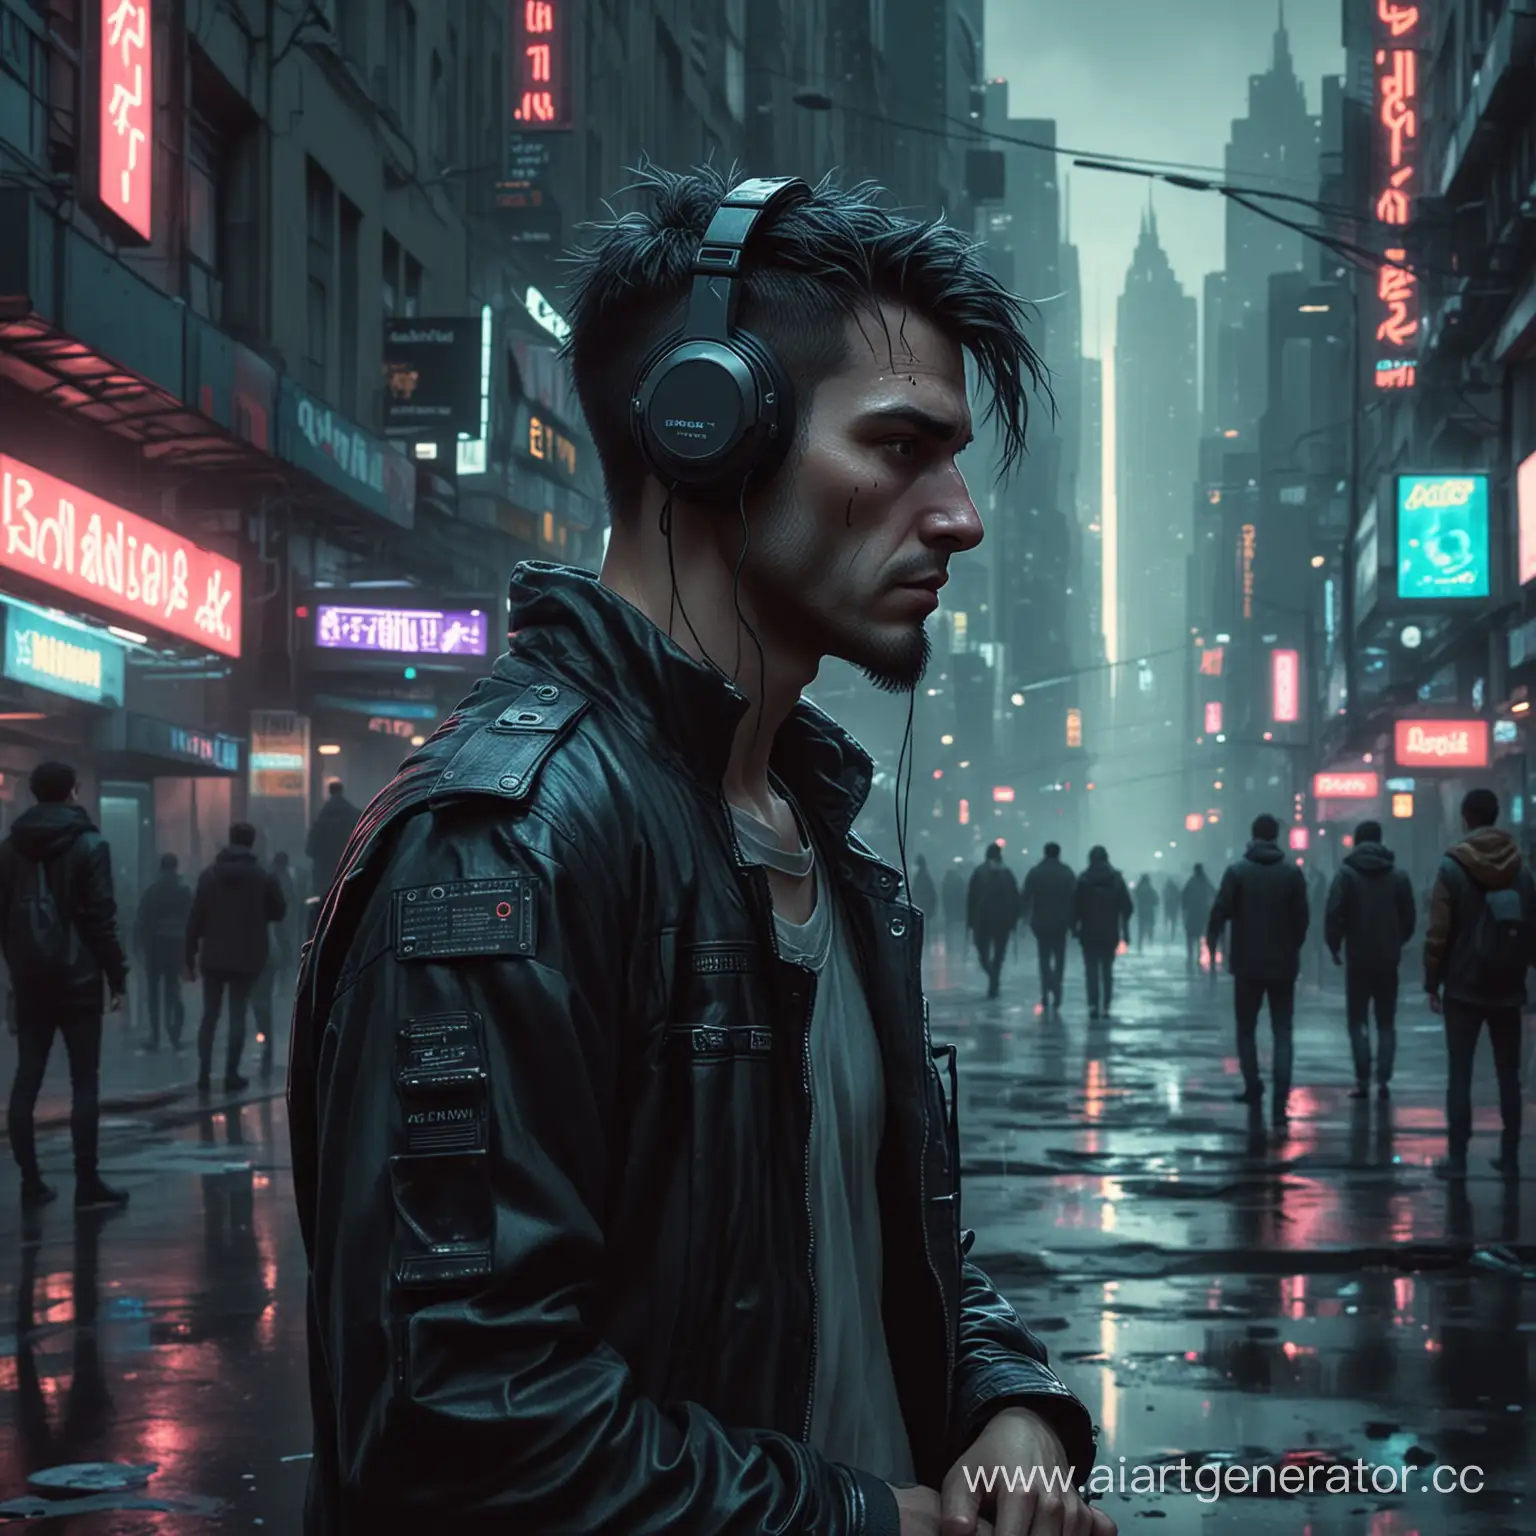 Город в стиле киберпанк, а на его улице стоит грустный человек который слушает музыку в жанре постпанк
